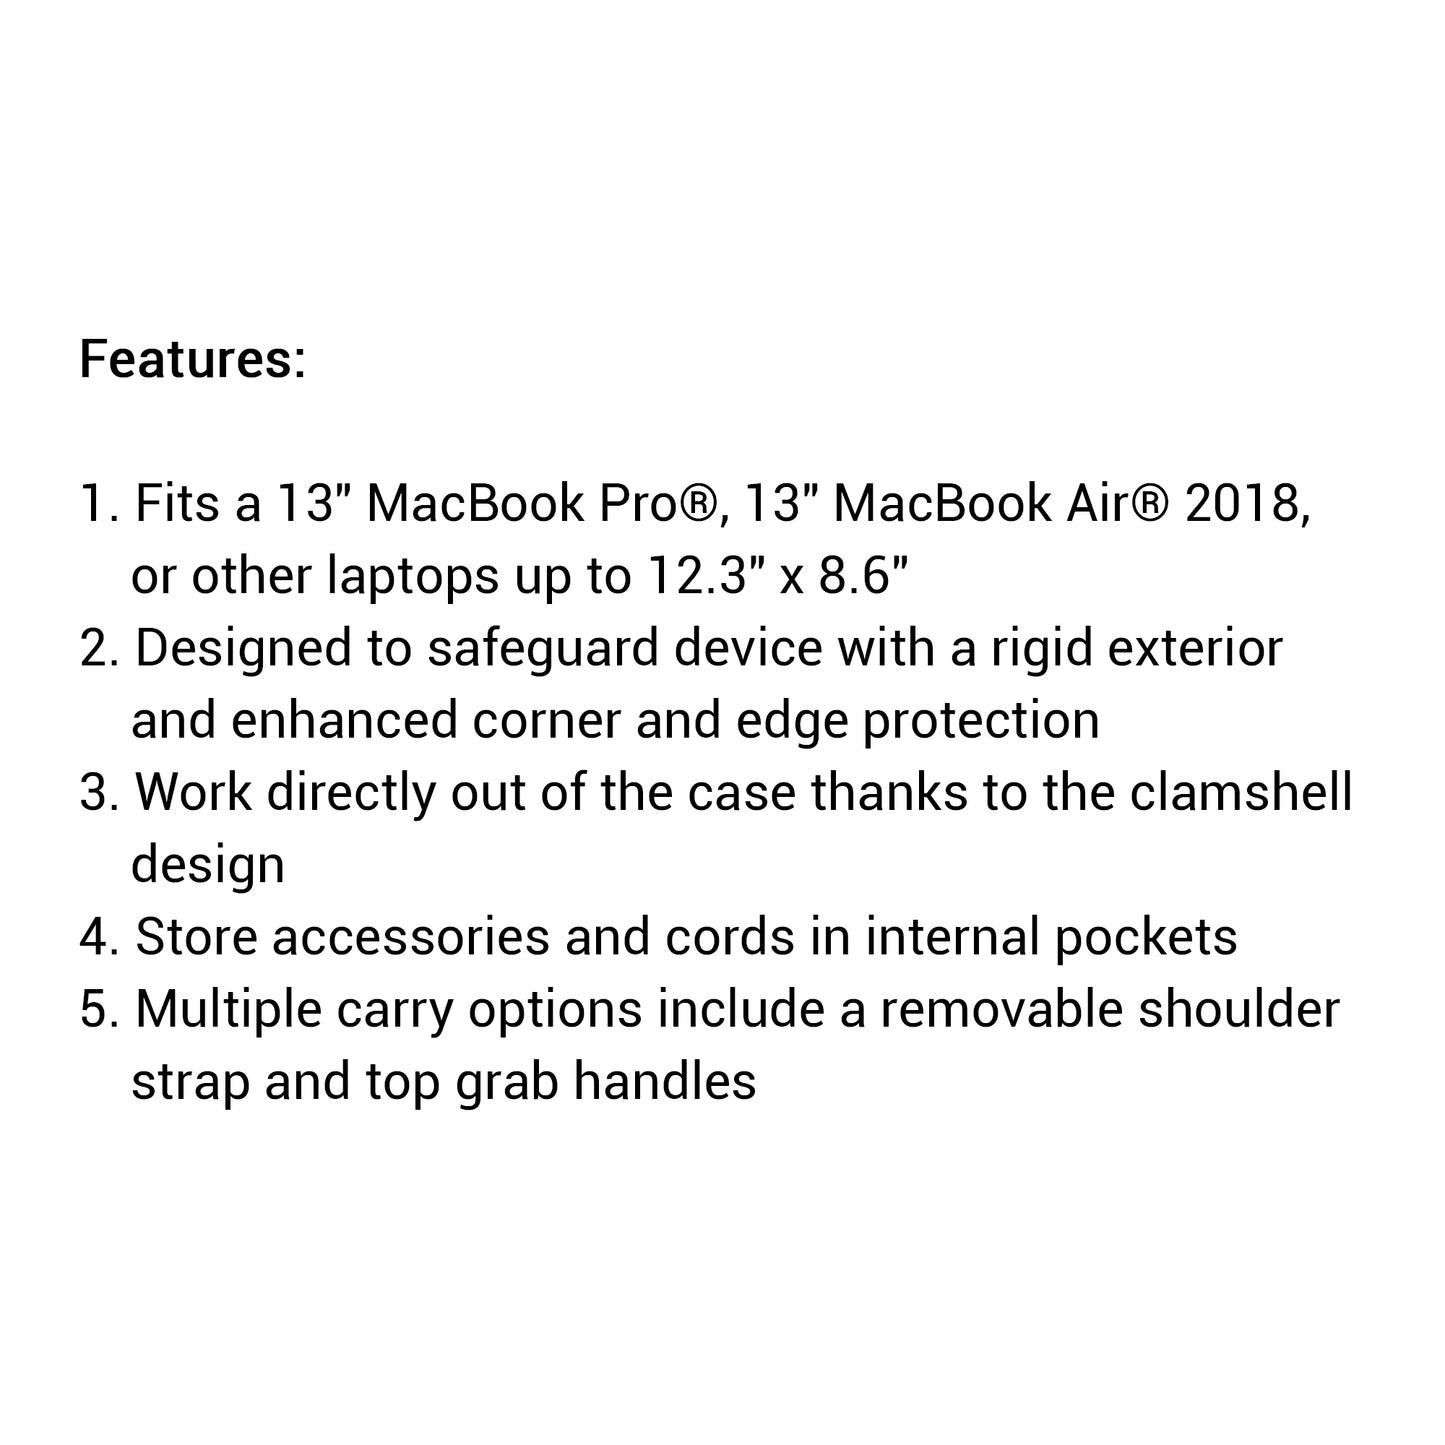 Thule Gauntlet 4.0 for MacBook Pro - Air Attache 13" - Laptop attache case - Black (Barcode: 0085854244527 )